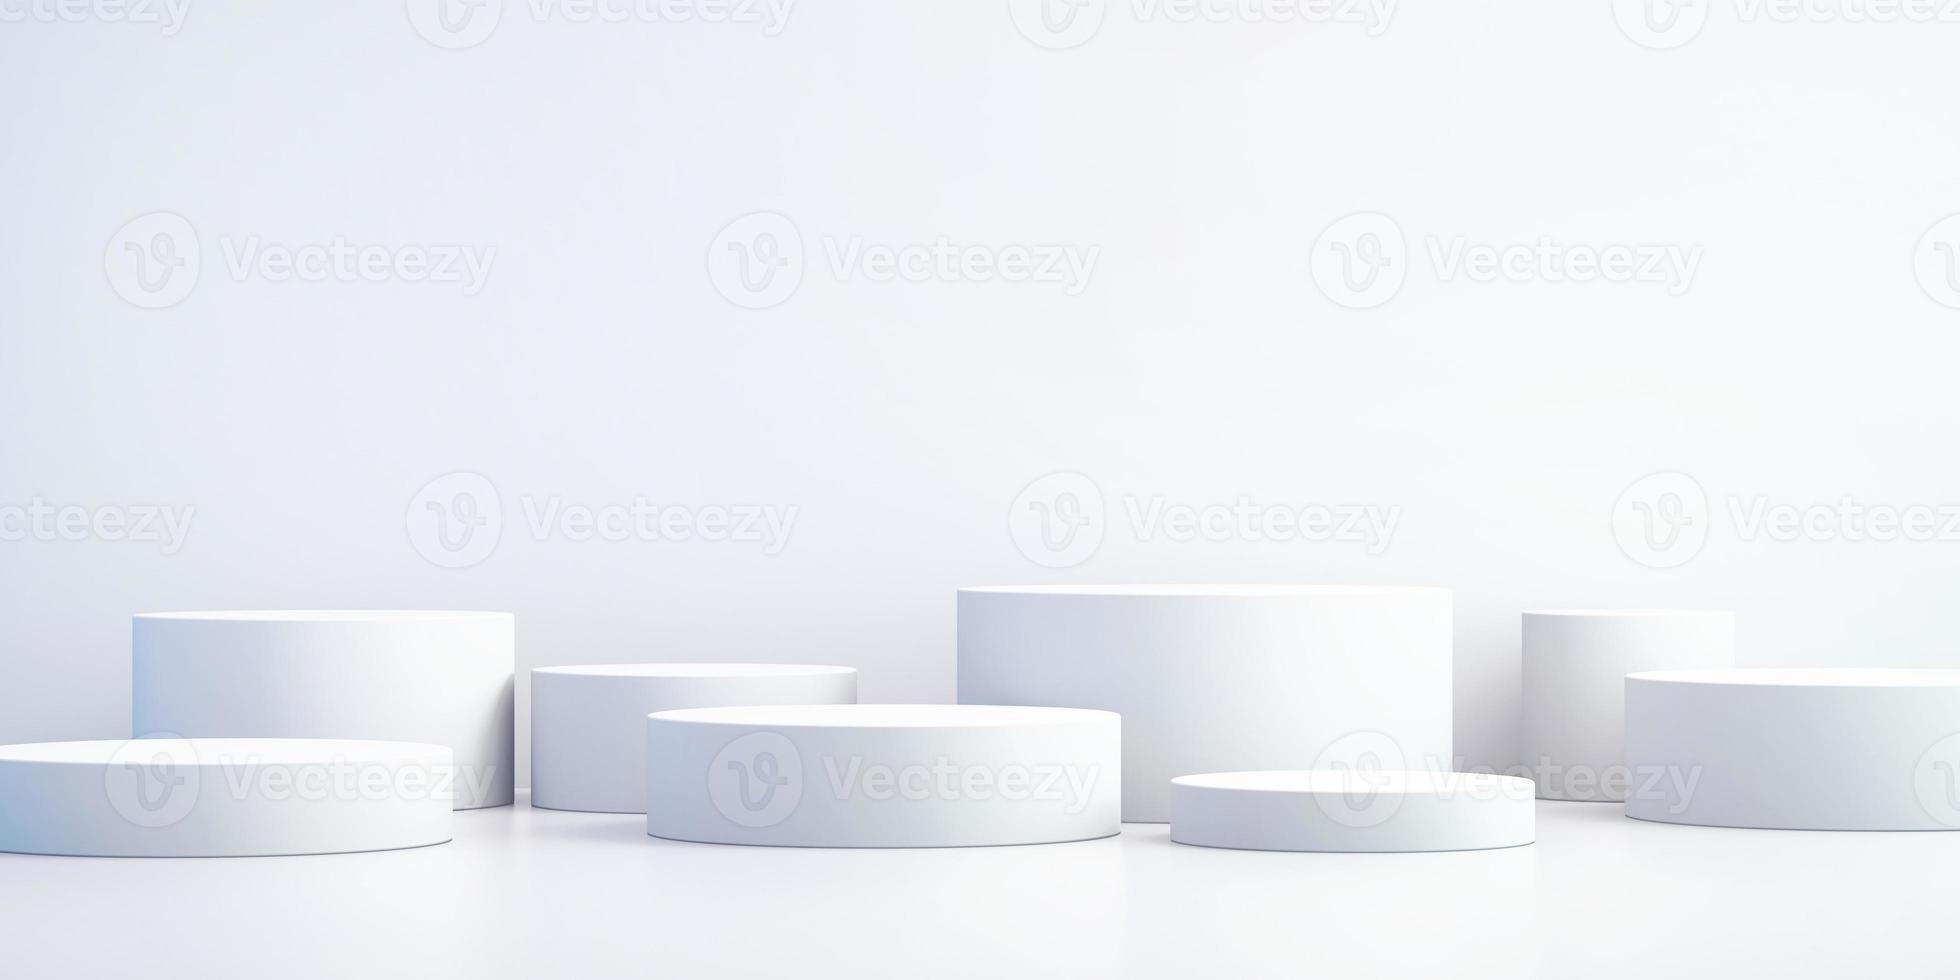 Fond 3d pour maquette de podium pour présentation de produit, fond blanc, rendu 3d photo